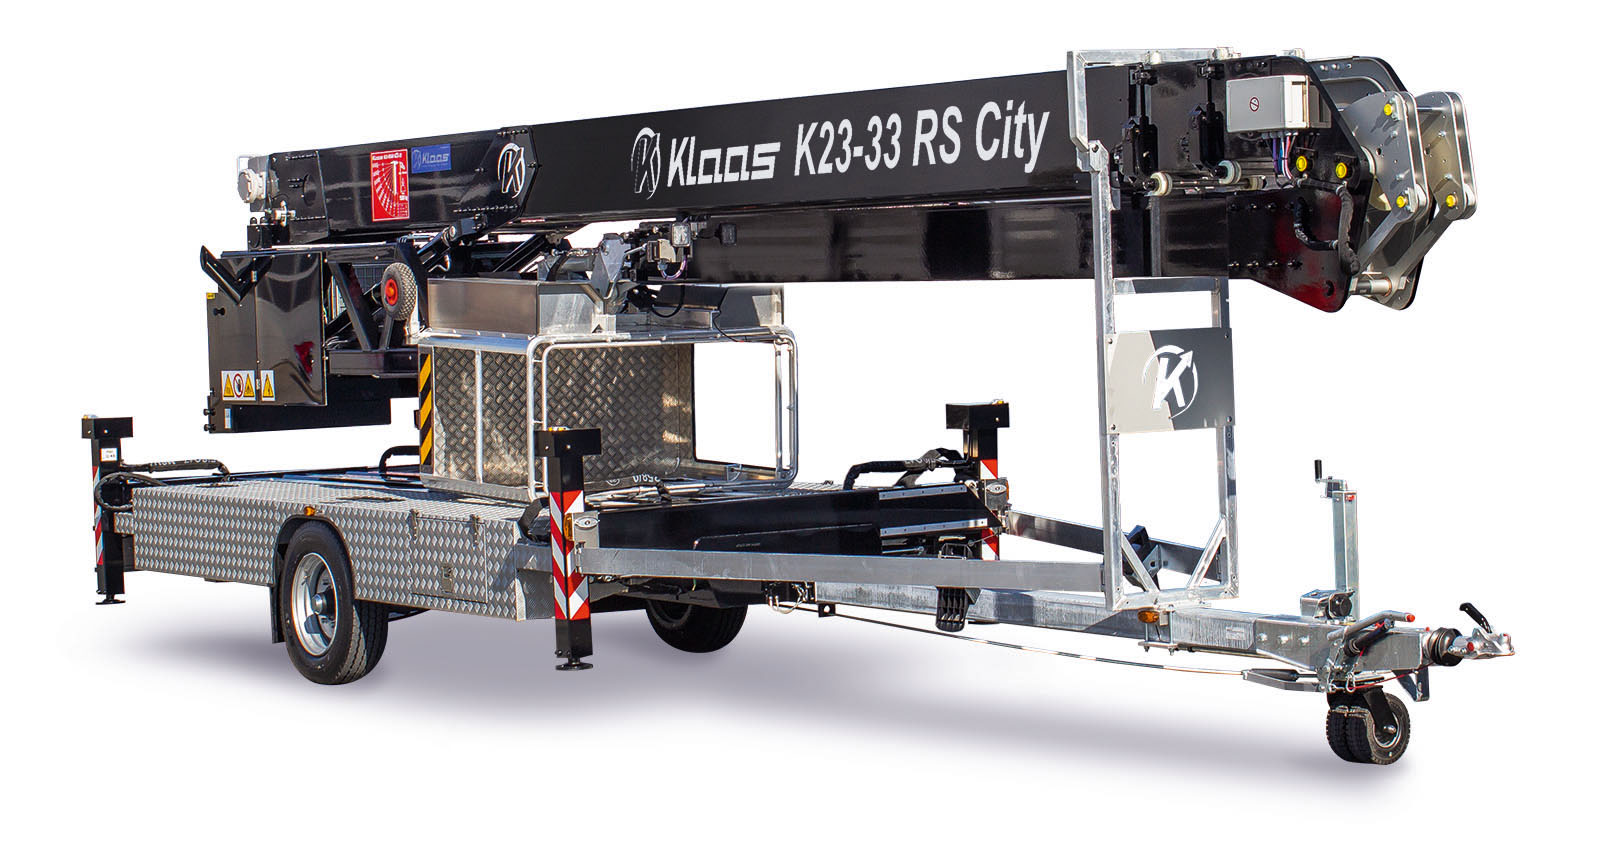 K23-33 RS City - Klaas Anhängerkrane, Autokrane, Möbelaufzüge, Bauaufzüge, Feuerwehr Löscharme Bühnen, Hubarbeitsbühnen